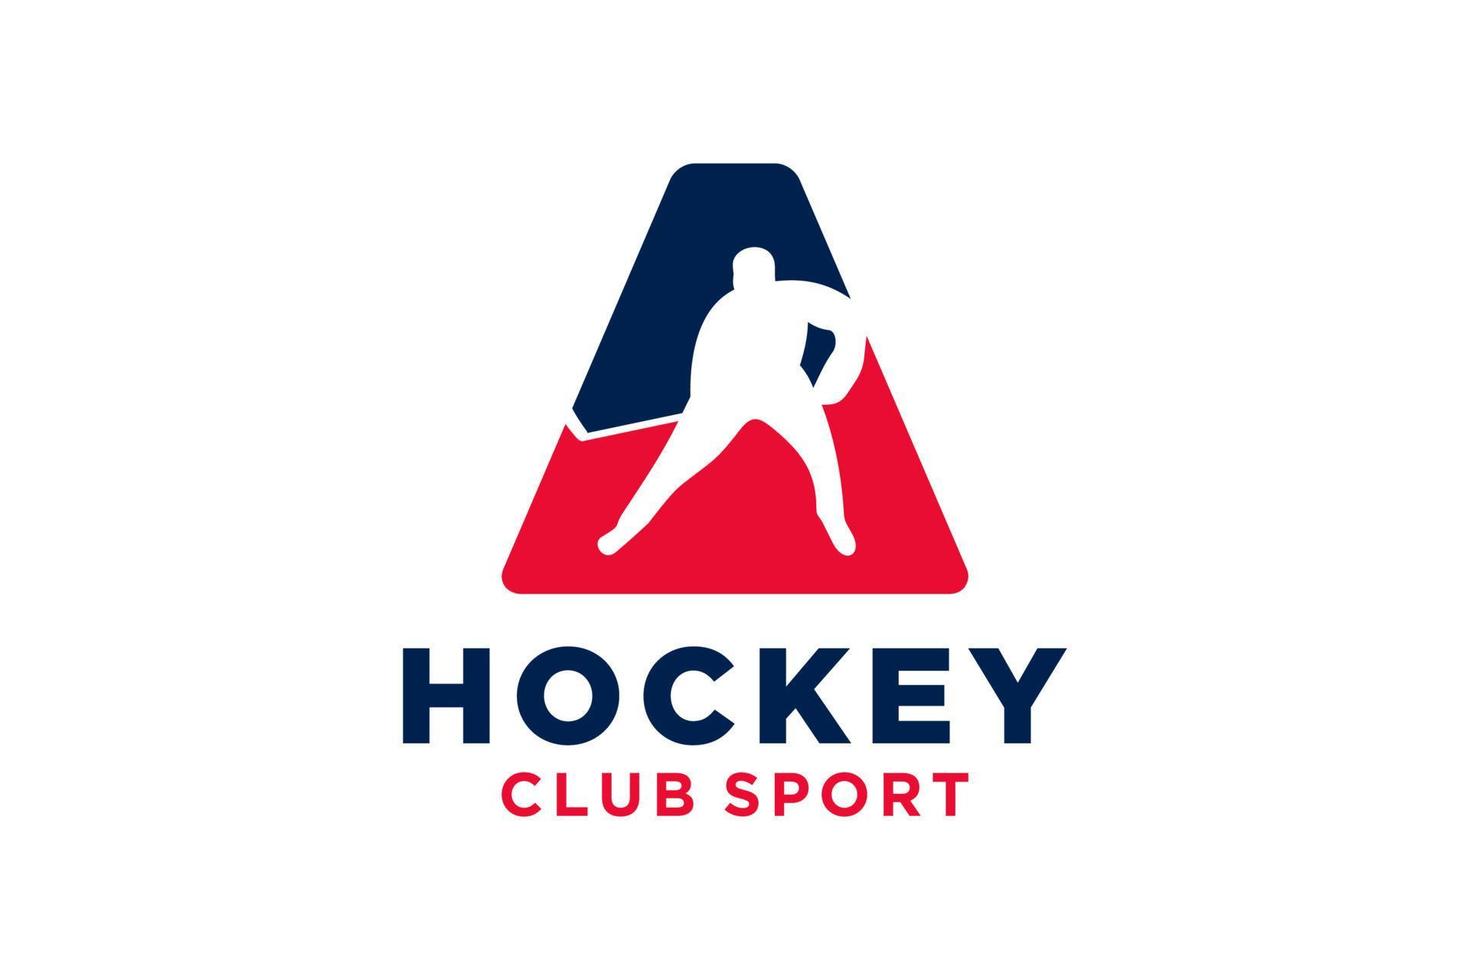 vecteur initiales lettre une avec le hockey Créatif géométrique moderne logo conception.